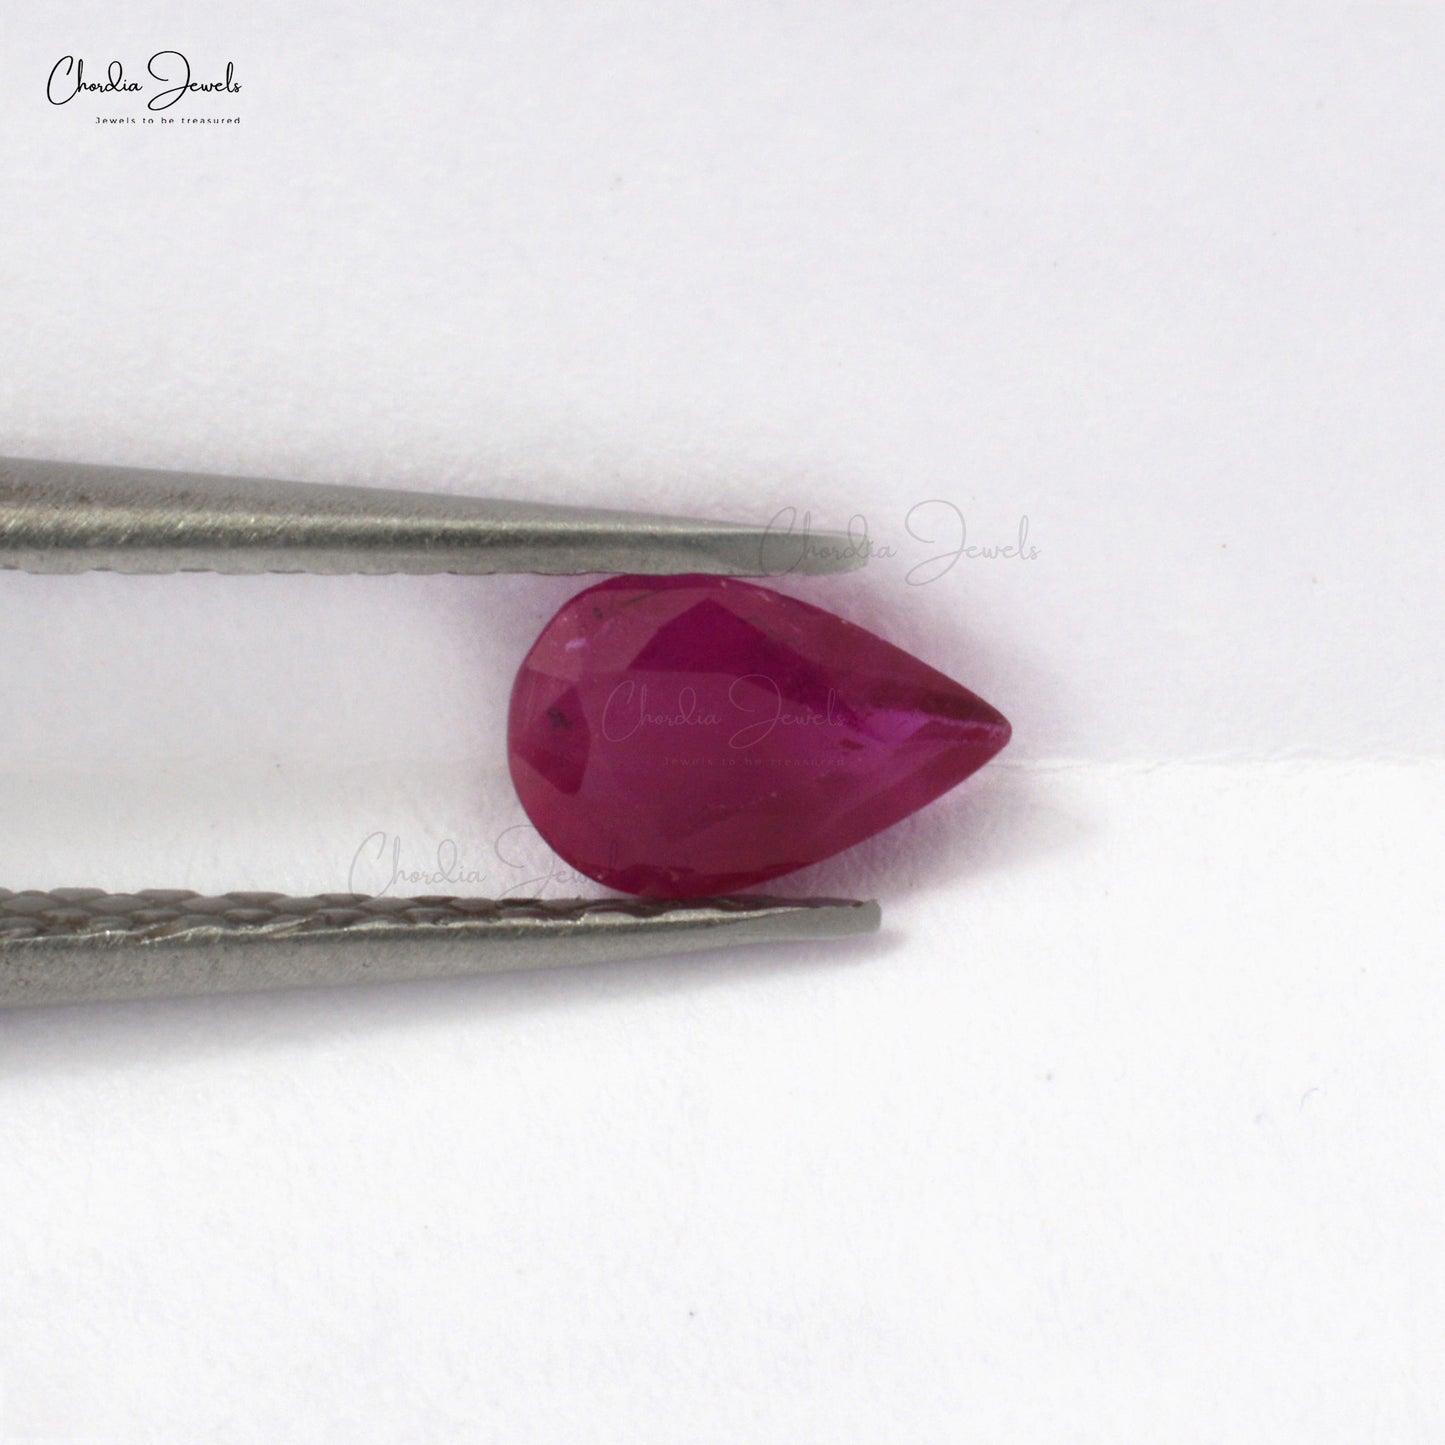 Precious Ruby Gemstone 6x4mm Pear Cut Ruby Gemstone For Jewelry Making, 1 Piece